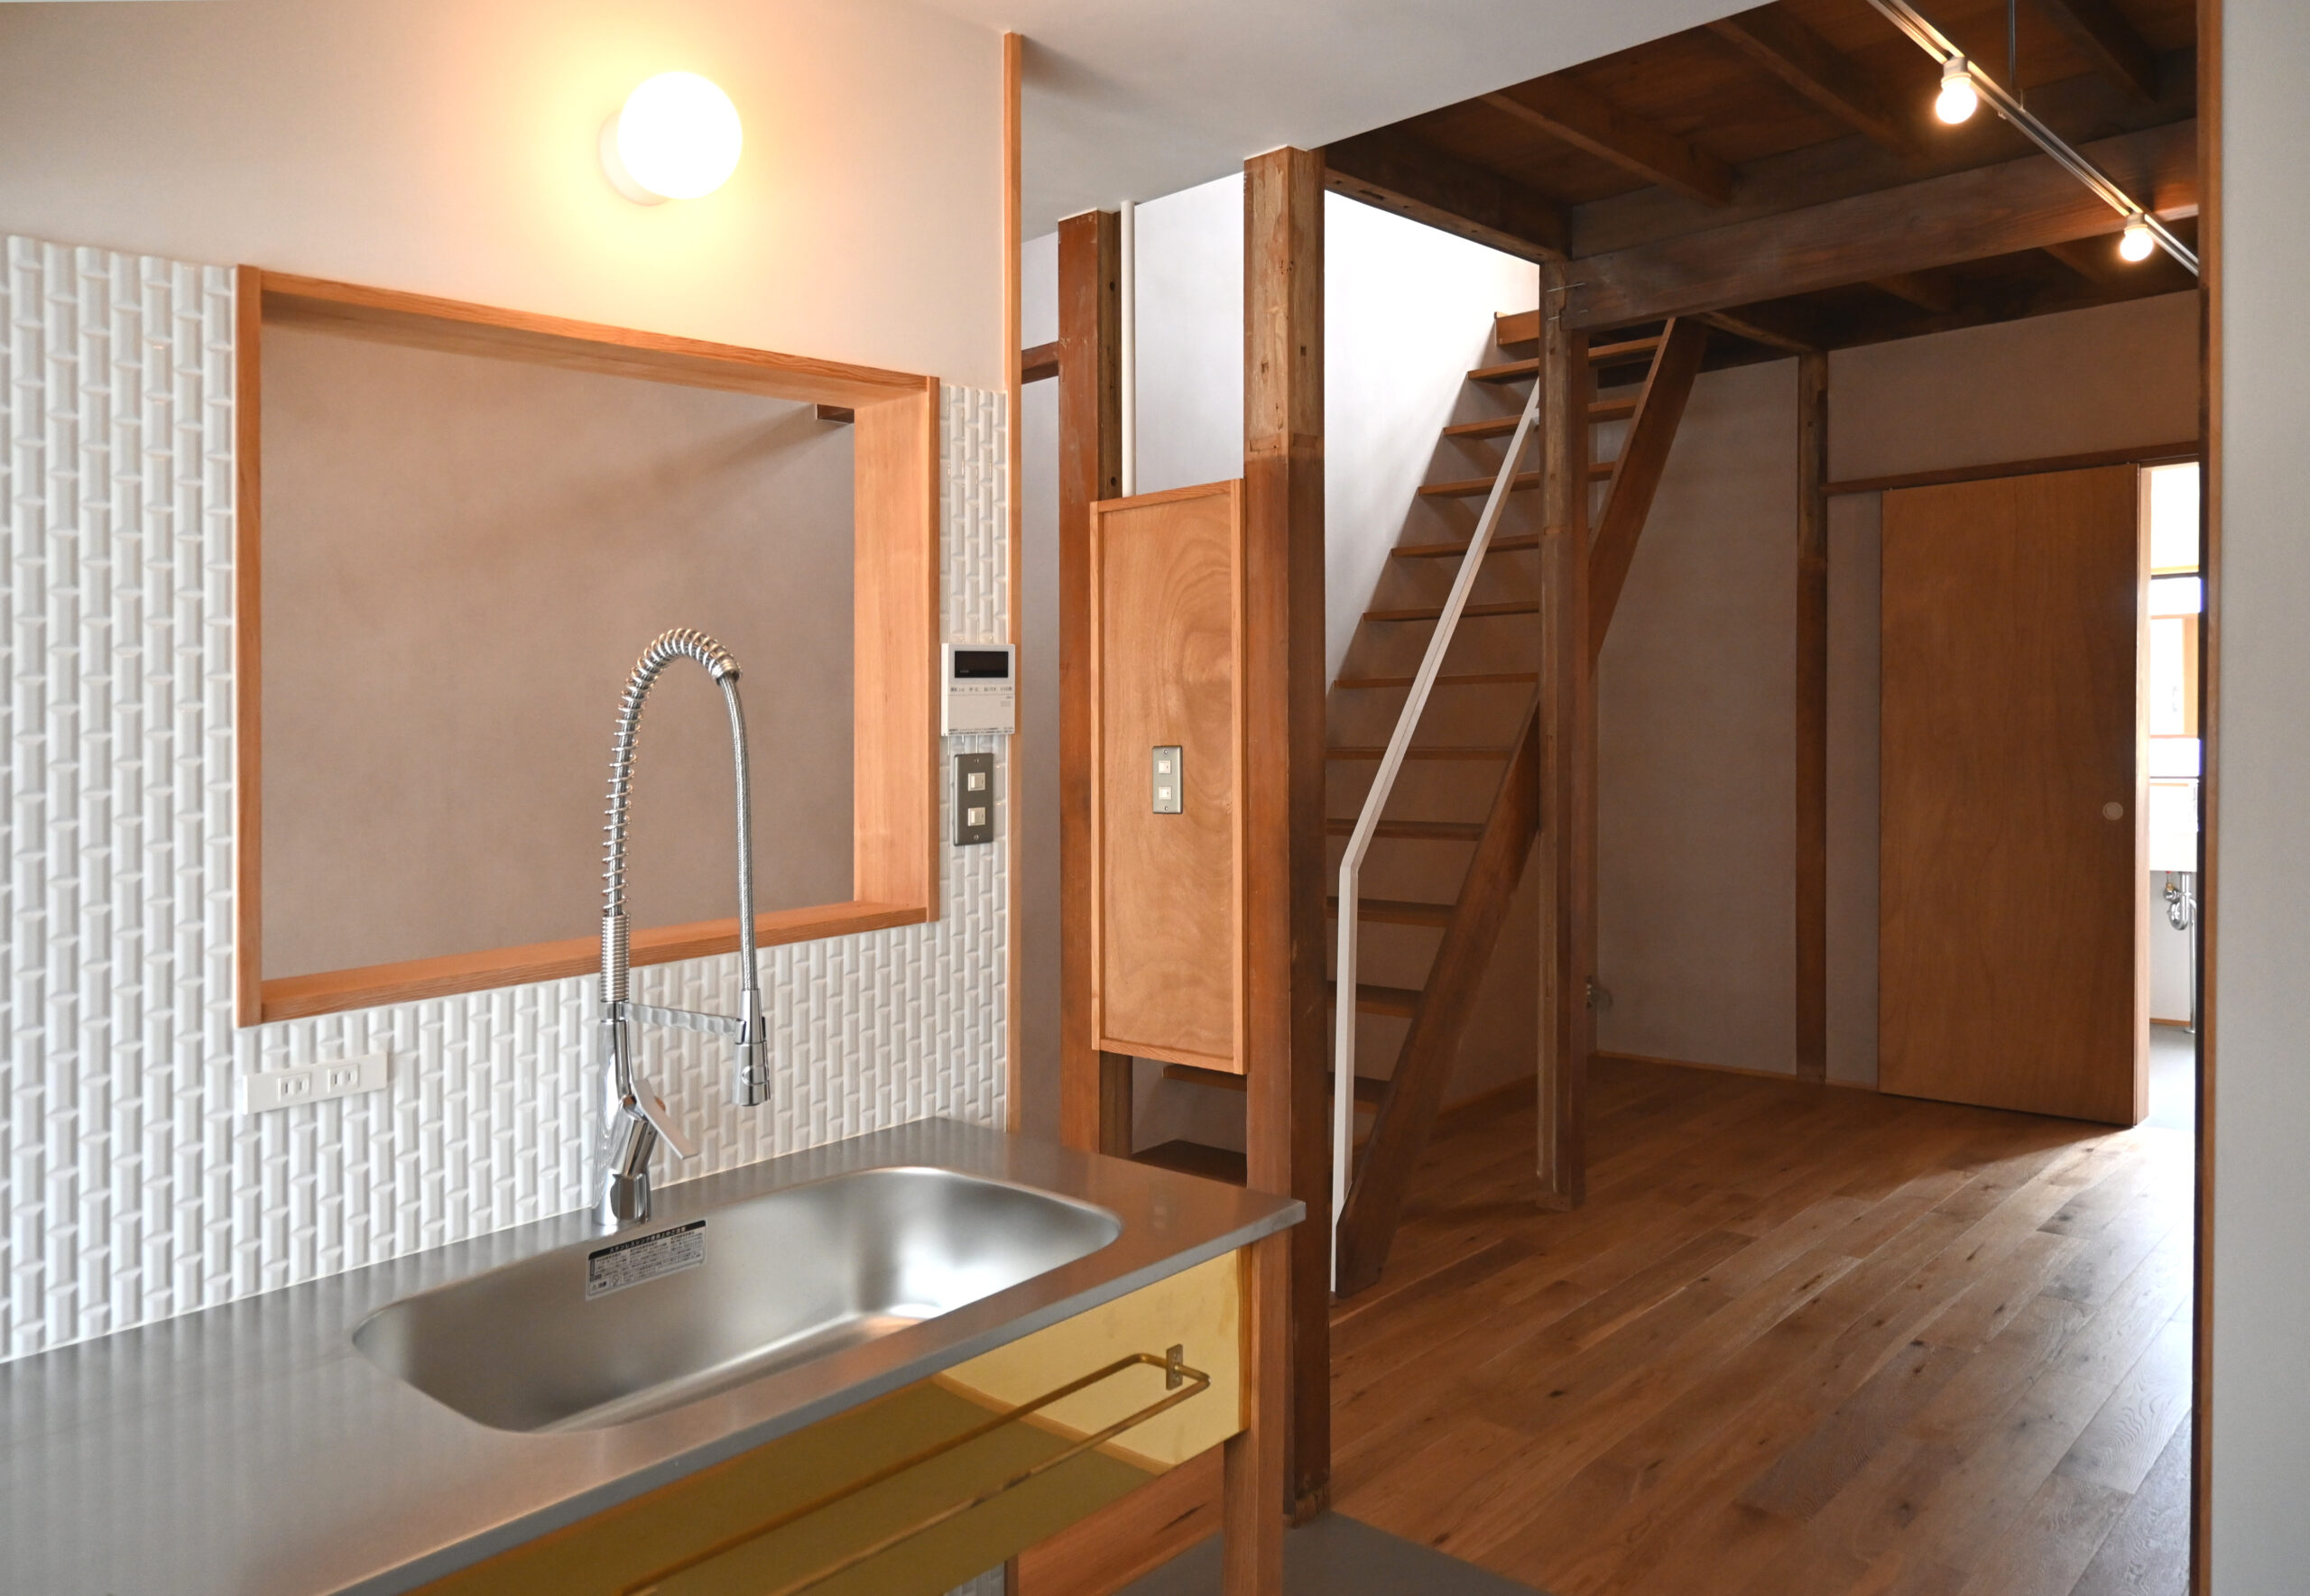 長屋リノベーションのキッチンダイニングスペース、シンプルなステンレス天板のオーダーメイド製作キッチン、シンプルでスタイリッシュな水栓